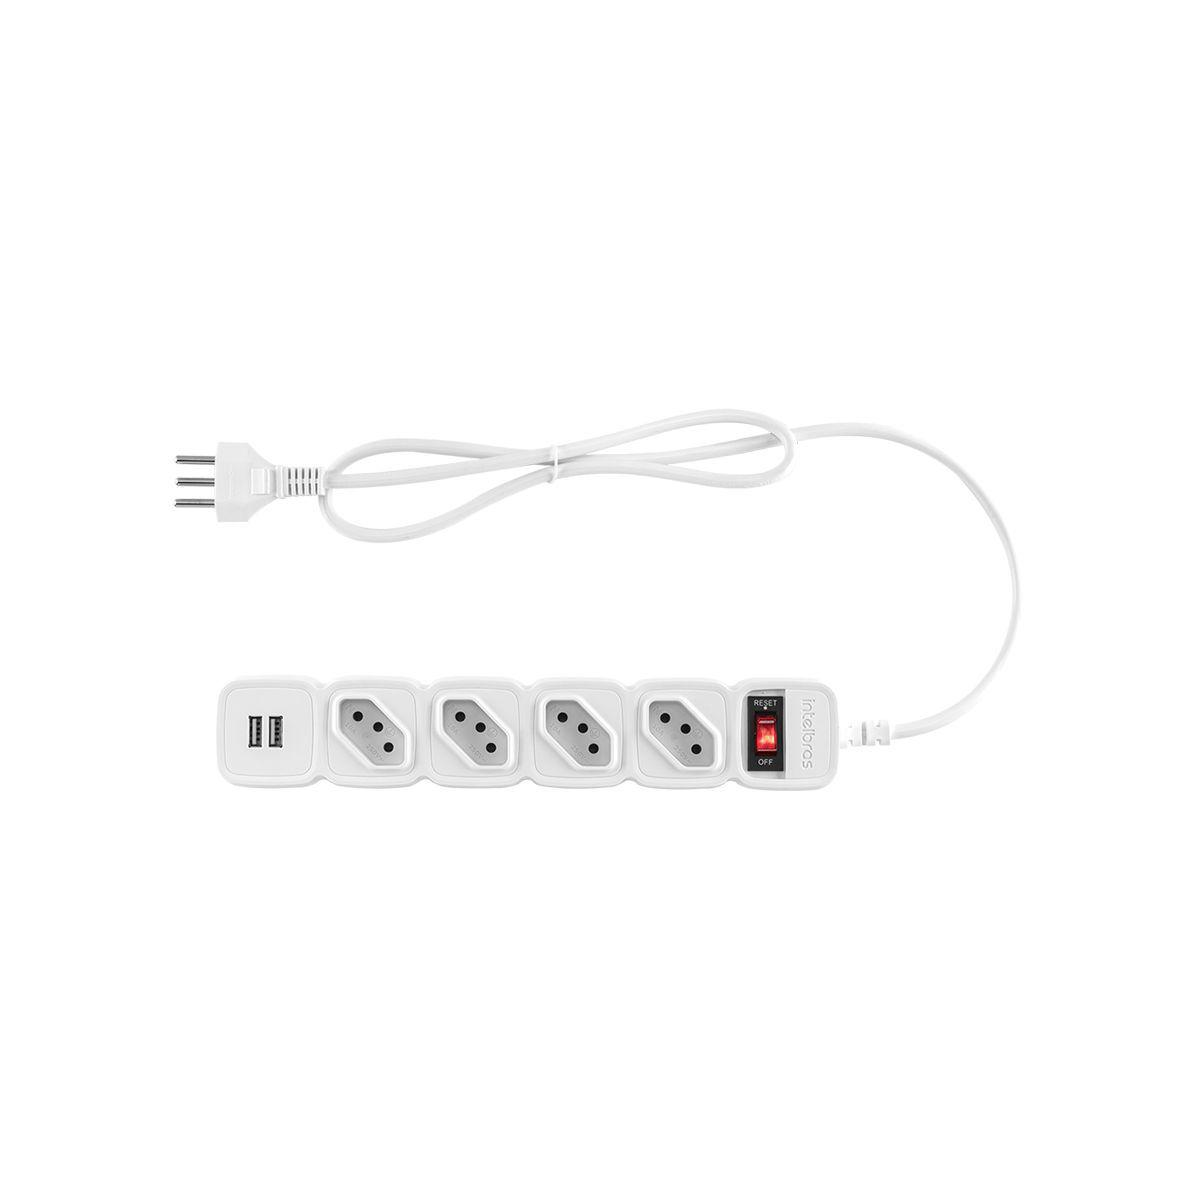 Protetor Eletrônico 4 Tomadas e 2 USB Intelbras EPE 204 USB branco (4824204) - JS Soluções em Segurança